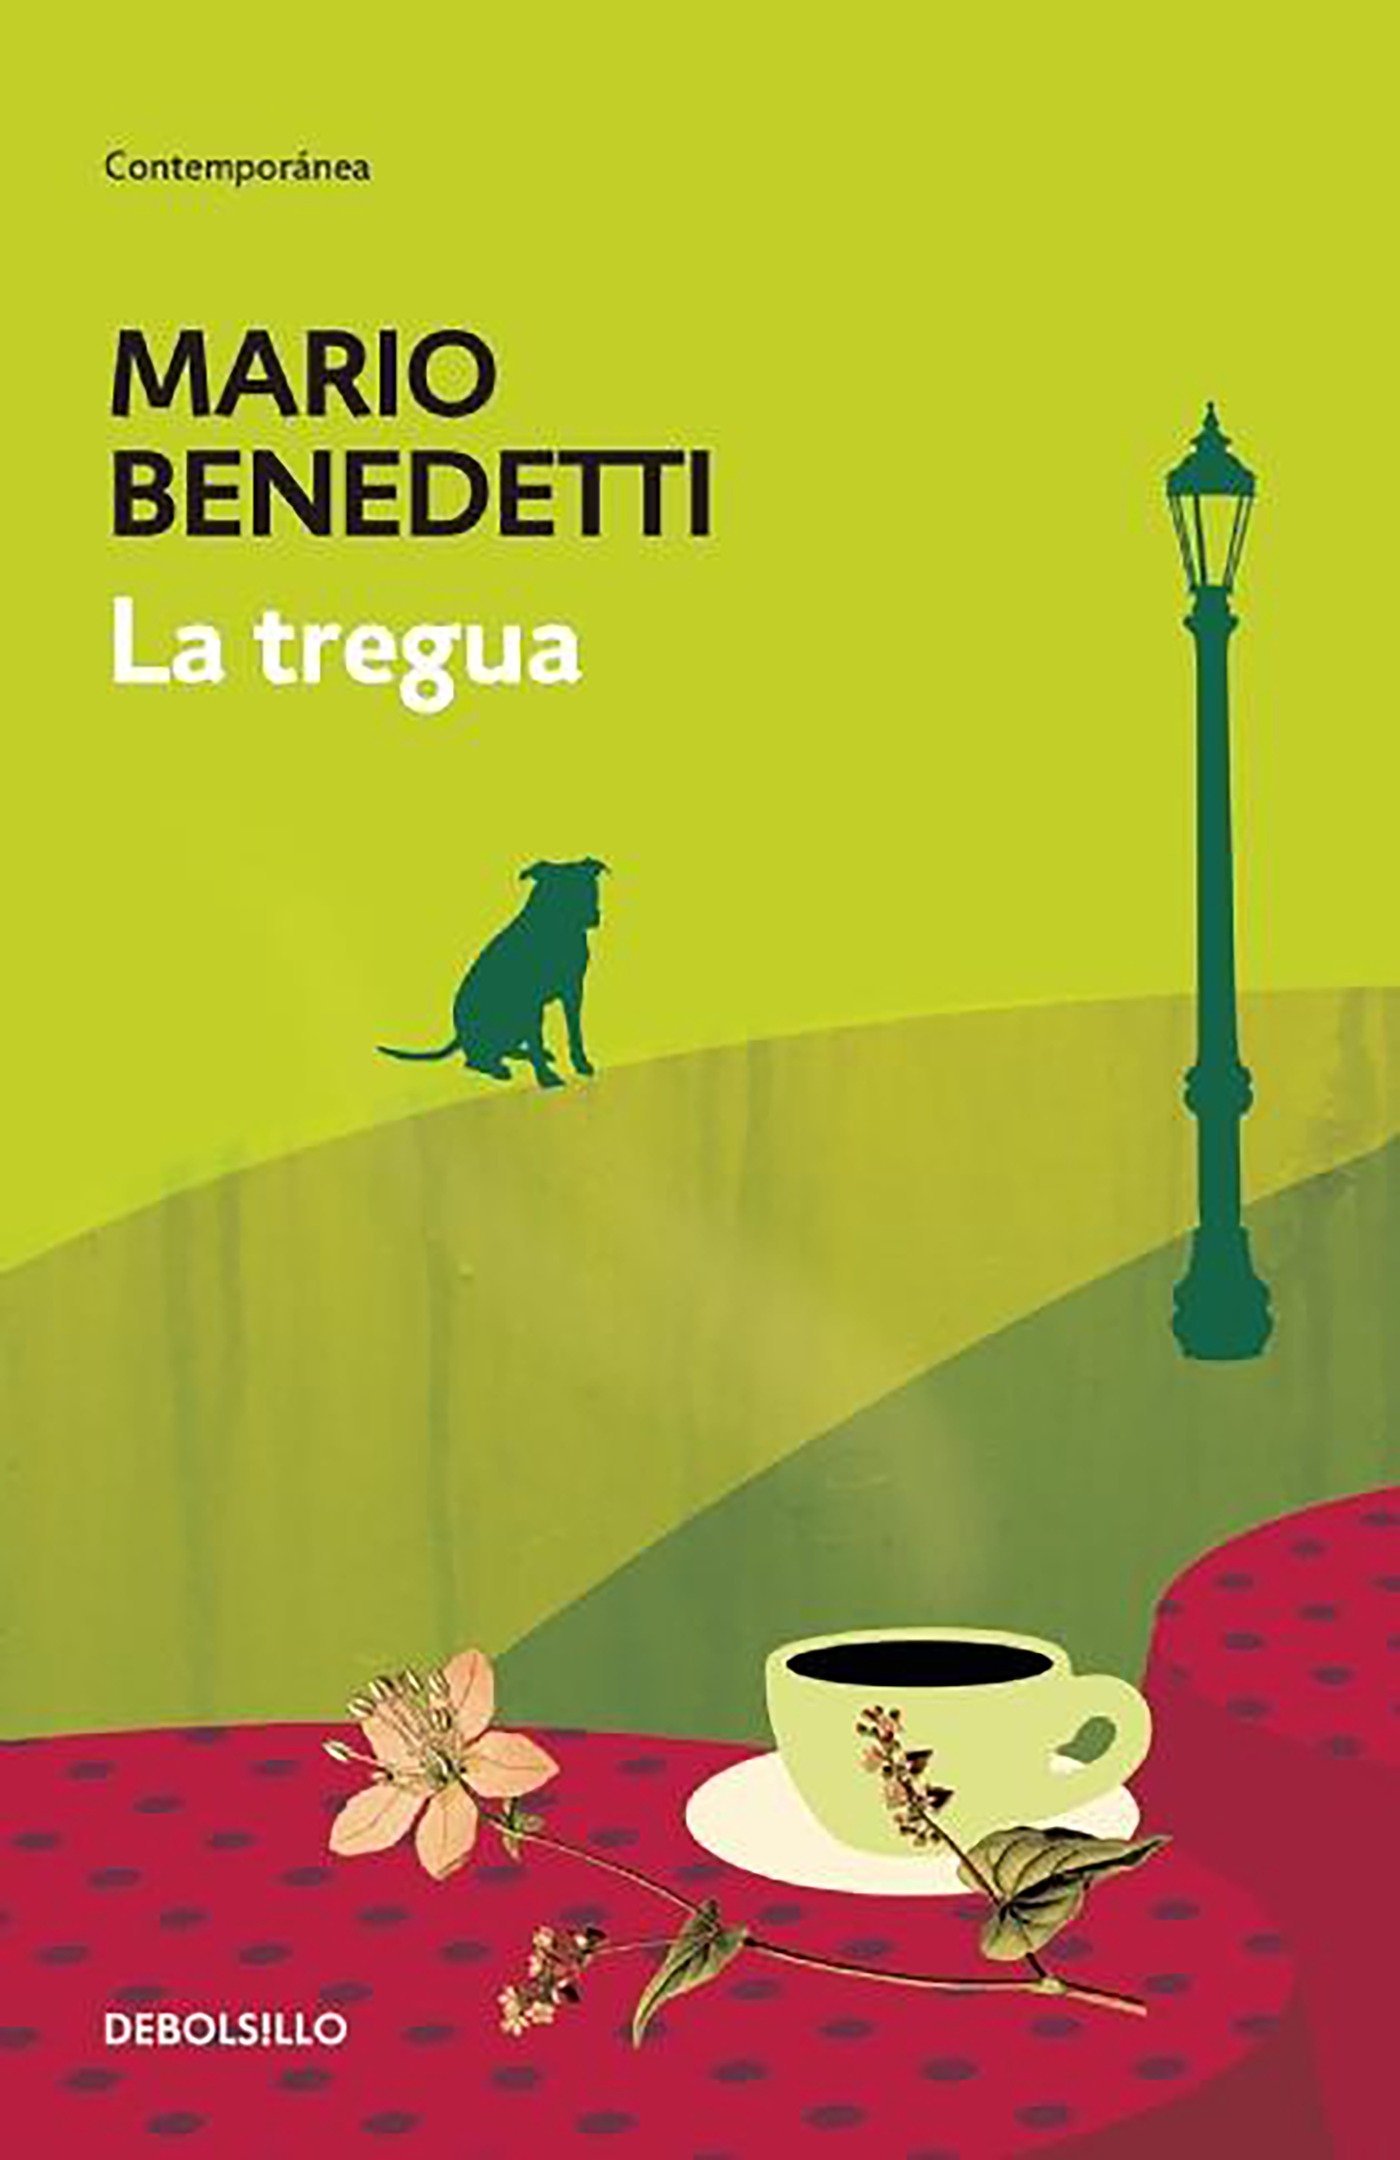 Cien años de Mario Benedetti: sus 10 libros más vendidos l RTVE